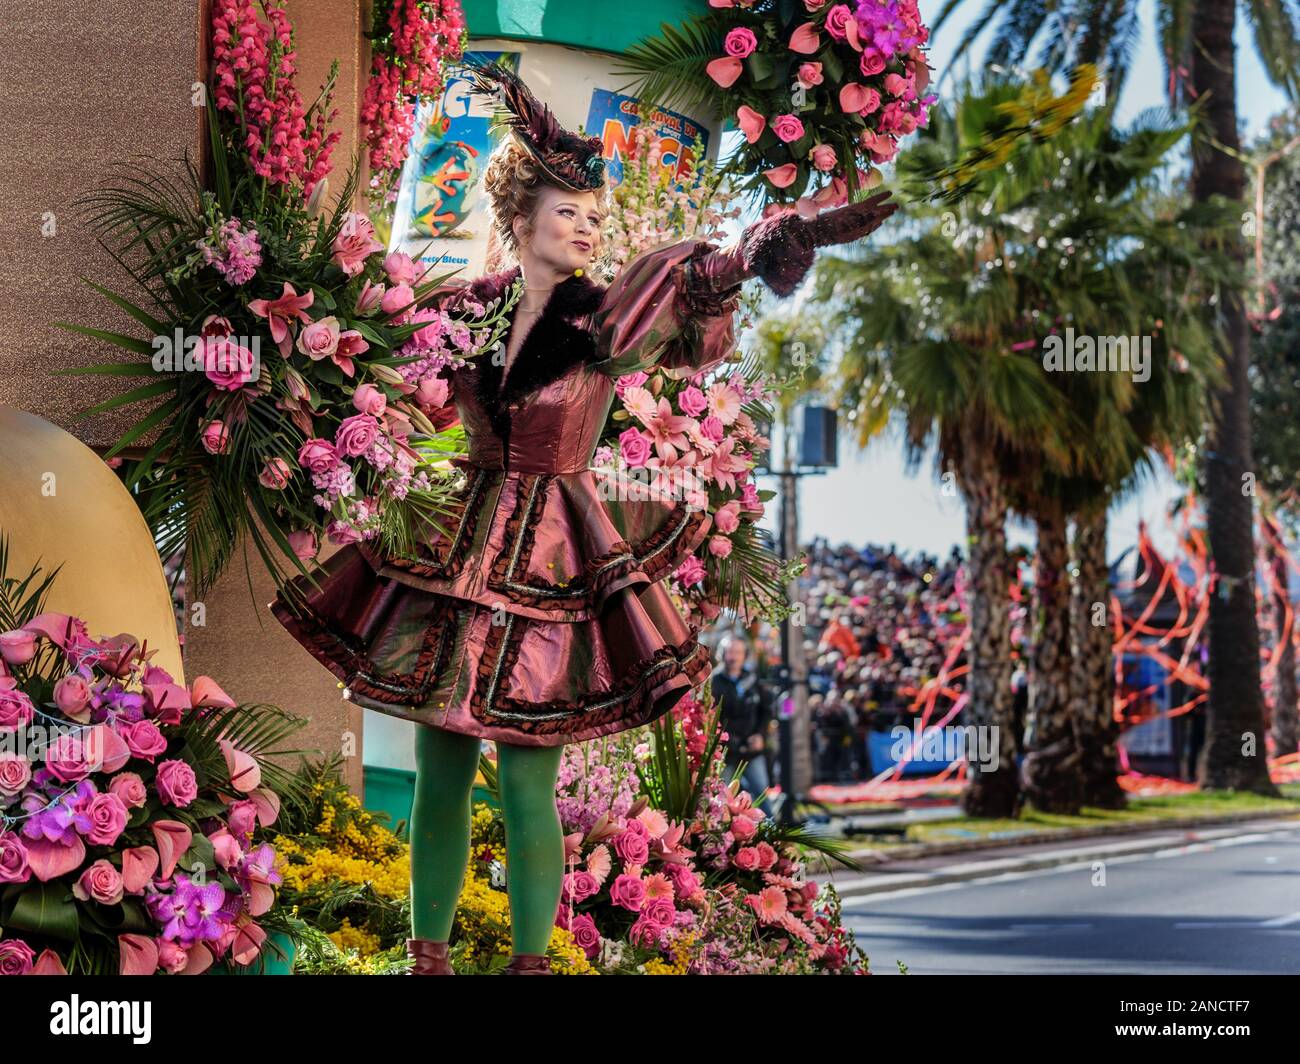 Künstler, die Blumen von der Flower Parade zur Menschenmenge werfen, Karneval in Nizza, französische Riviera, Cote d'Azur, Frankreich. Stockfoto